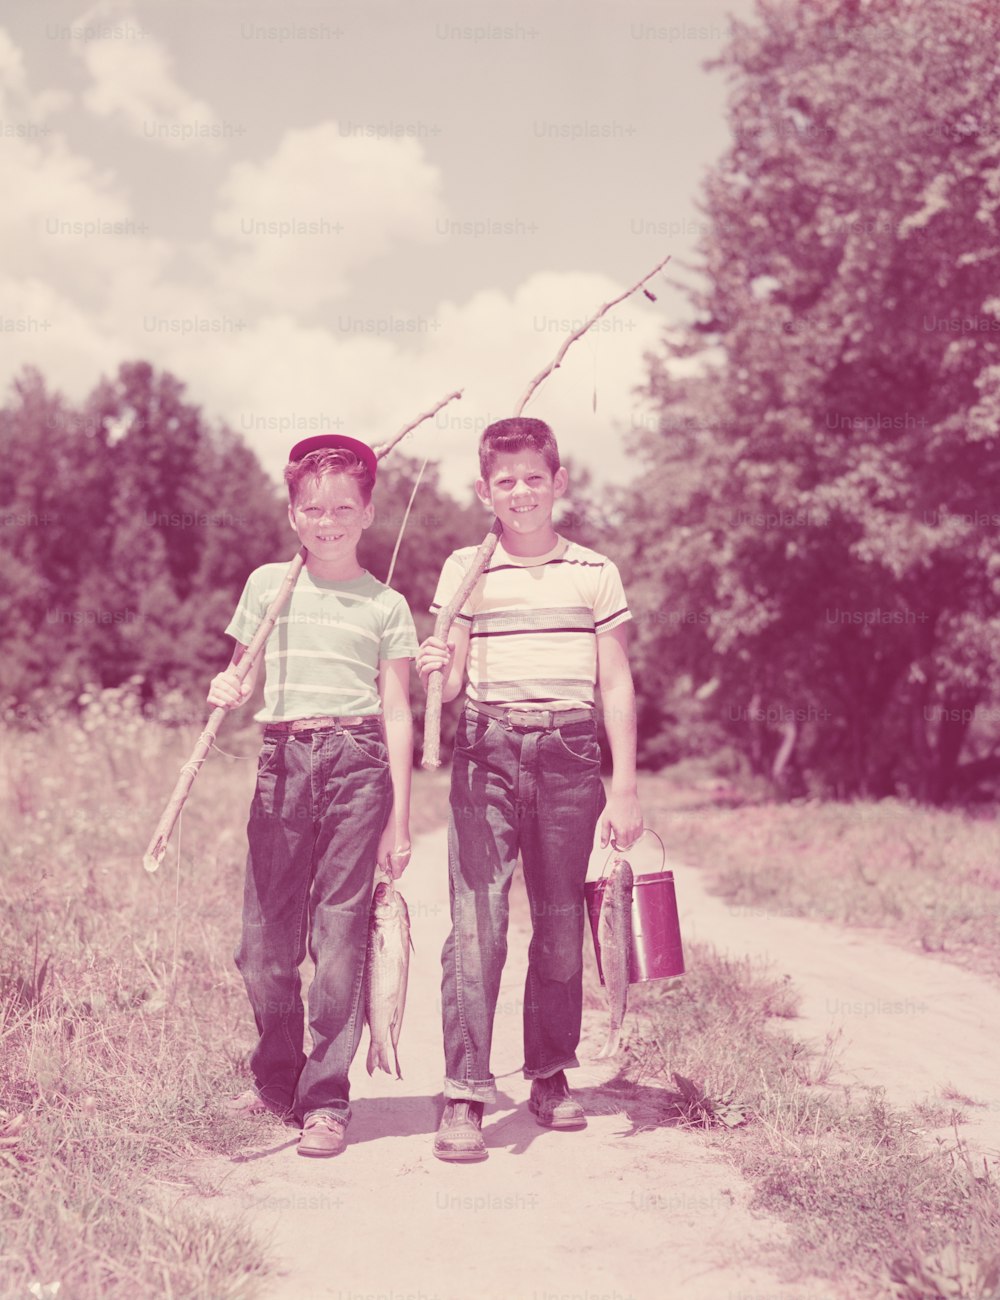 アメリカ合衆国 - 1950年代頃:小枝釣り竿を持って路地を歩く2人の少年。